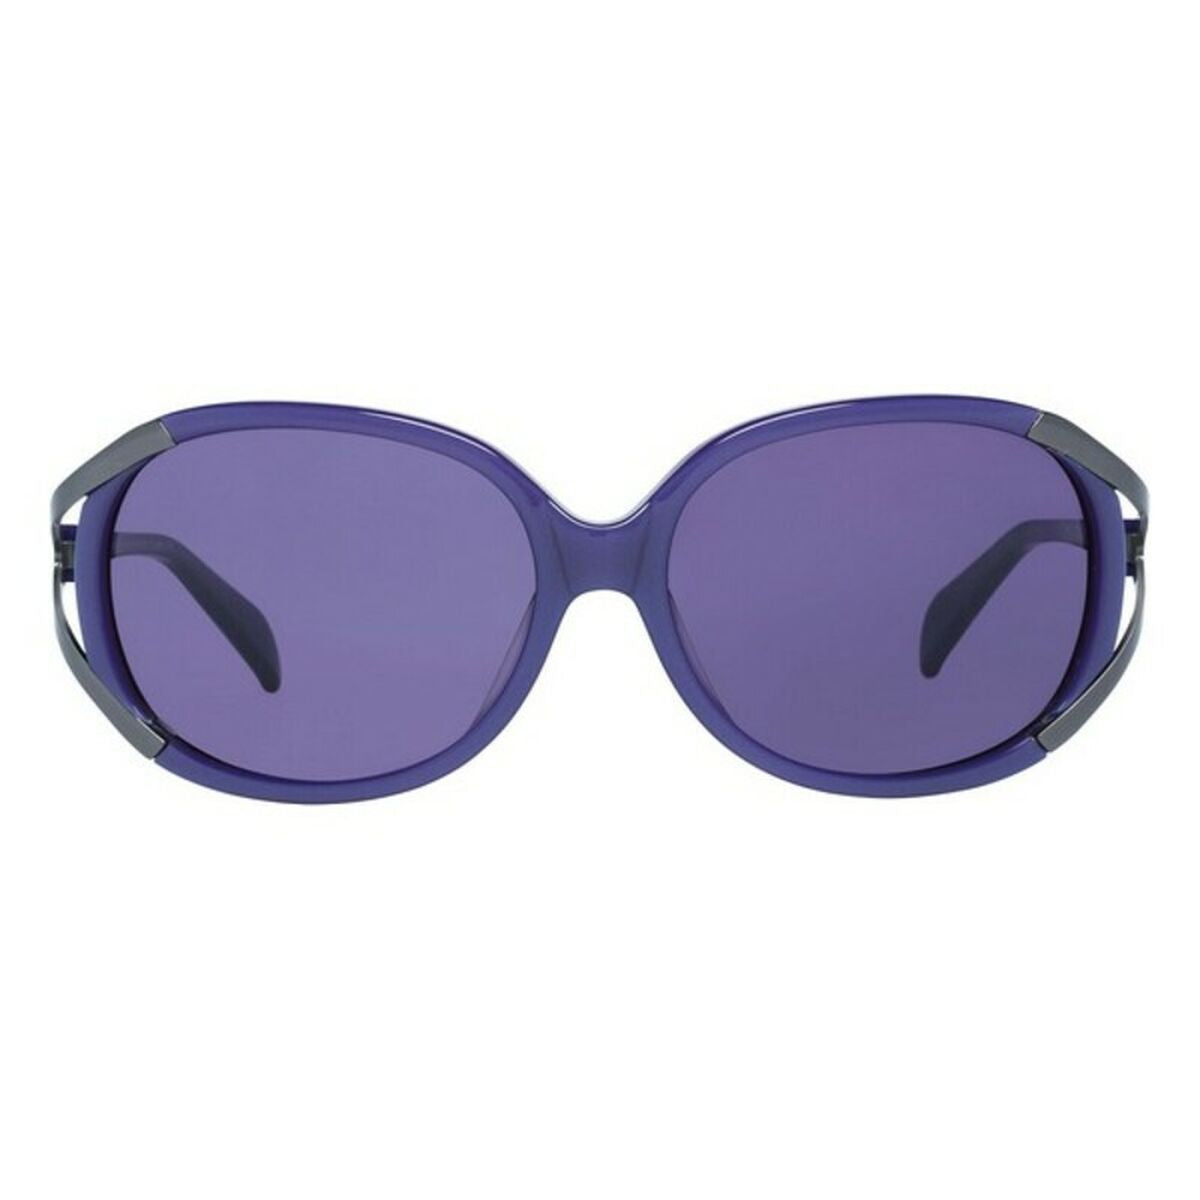 Ladies'Sunglasses More & More